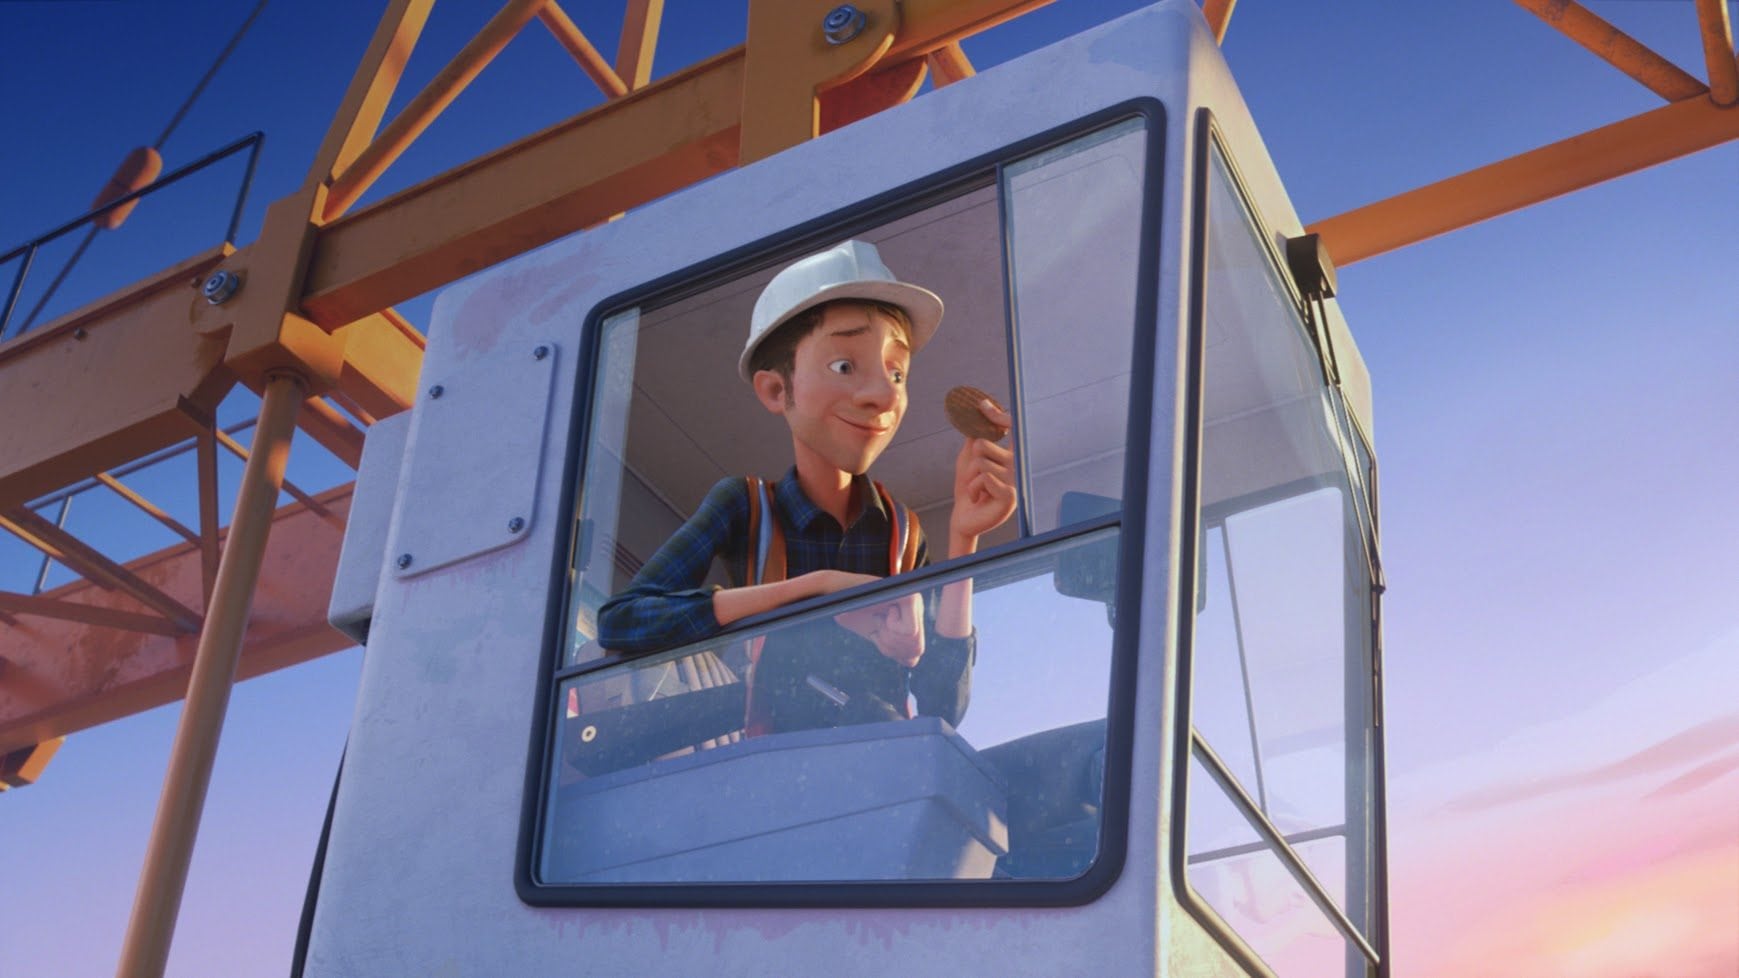 McVitie's'in yeni reklamı Pixar-esque esintiler taşıyor